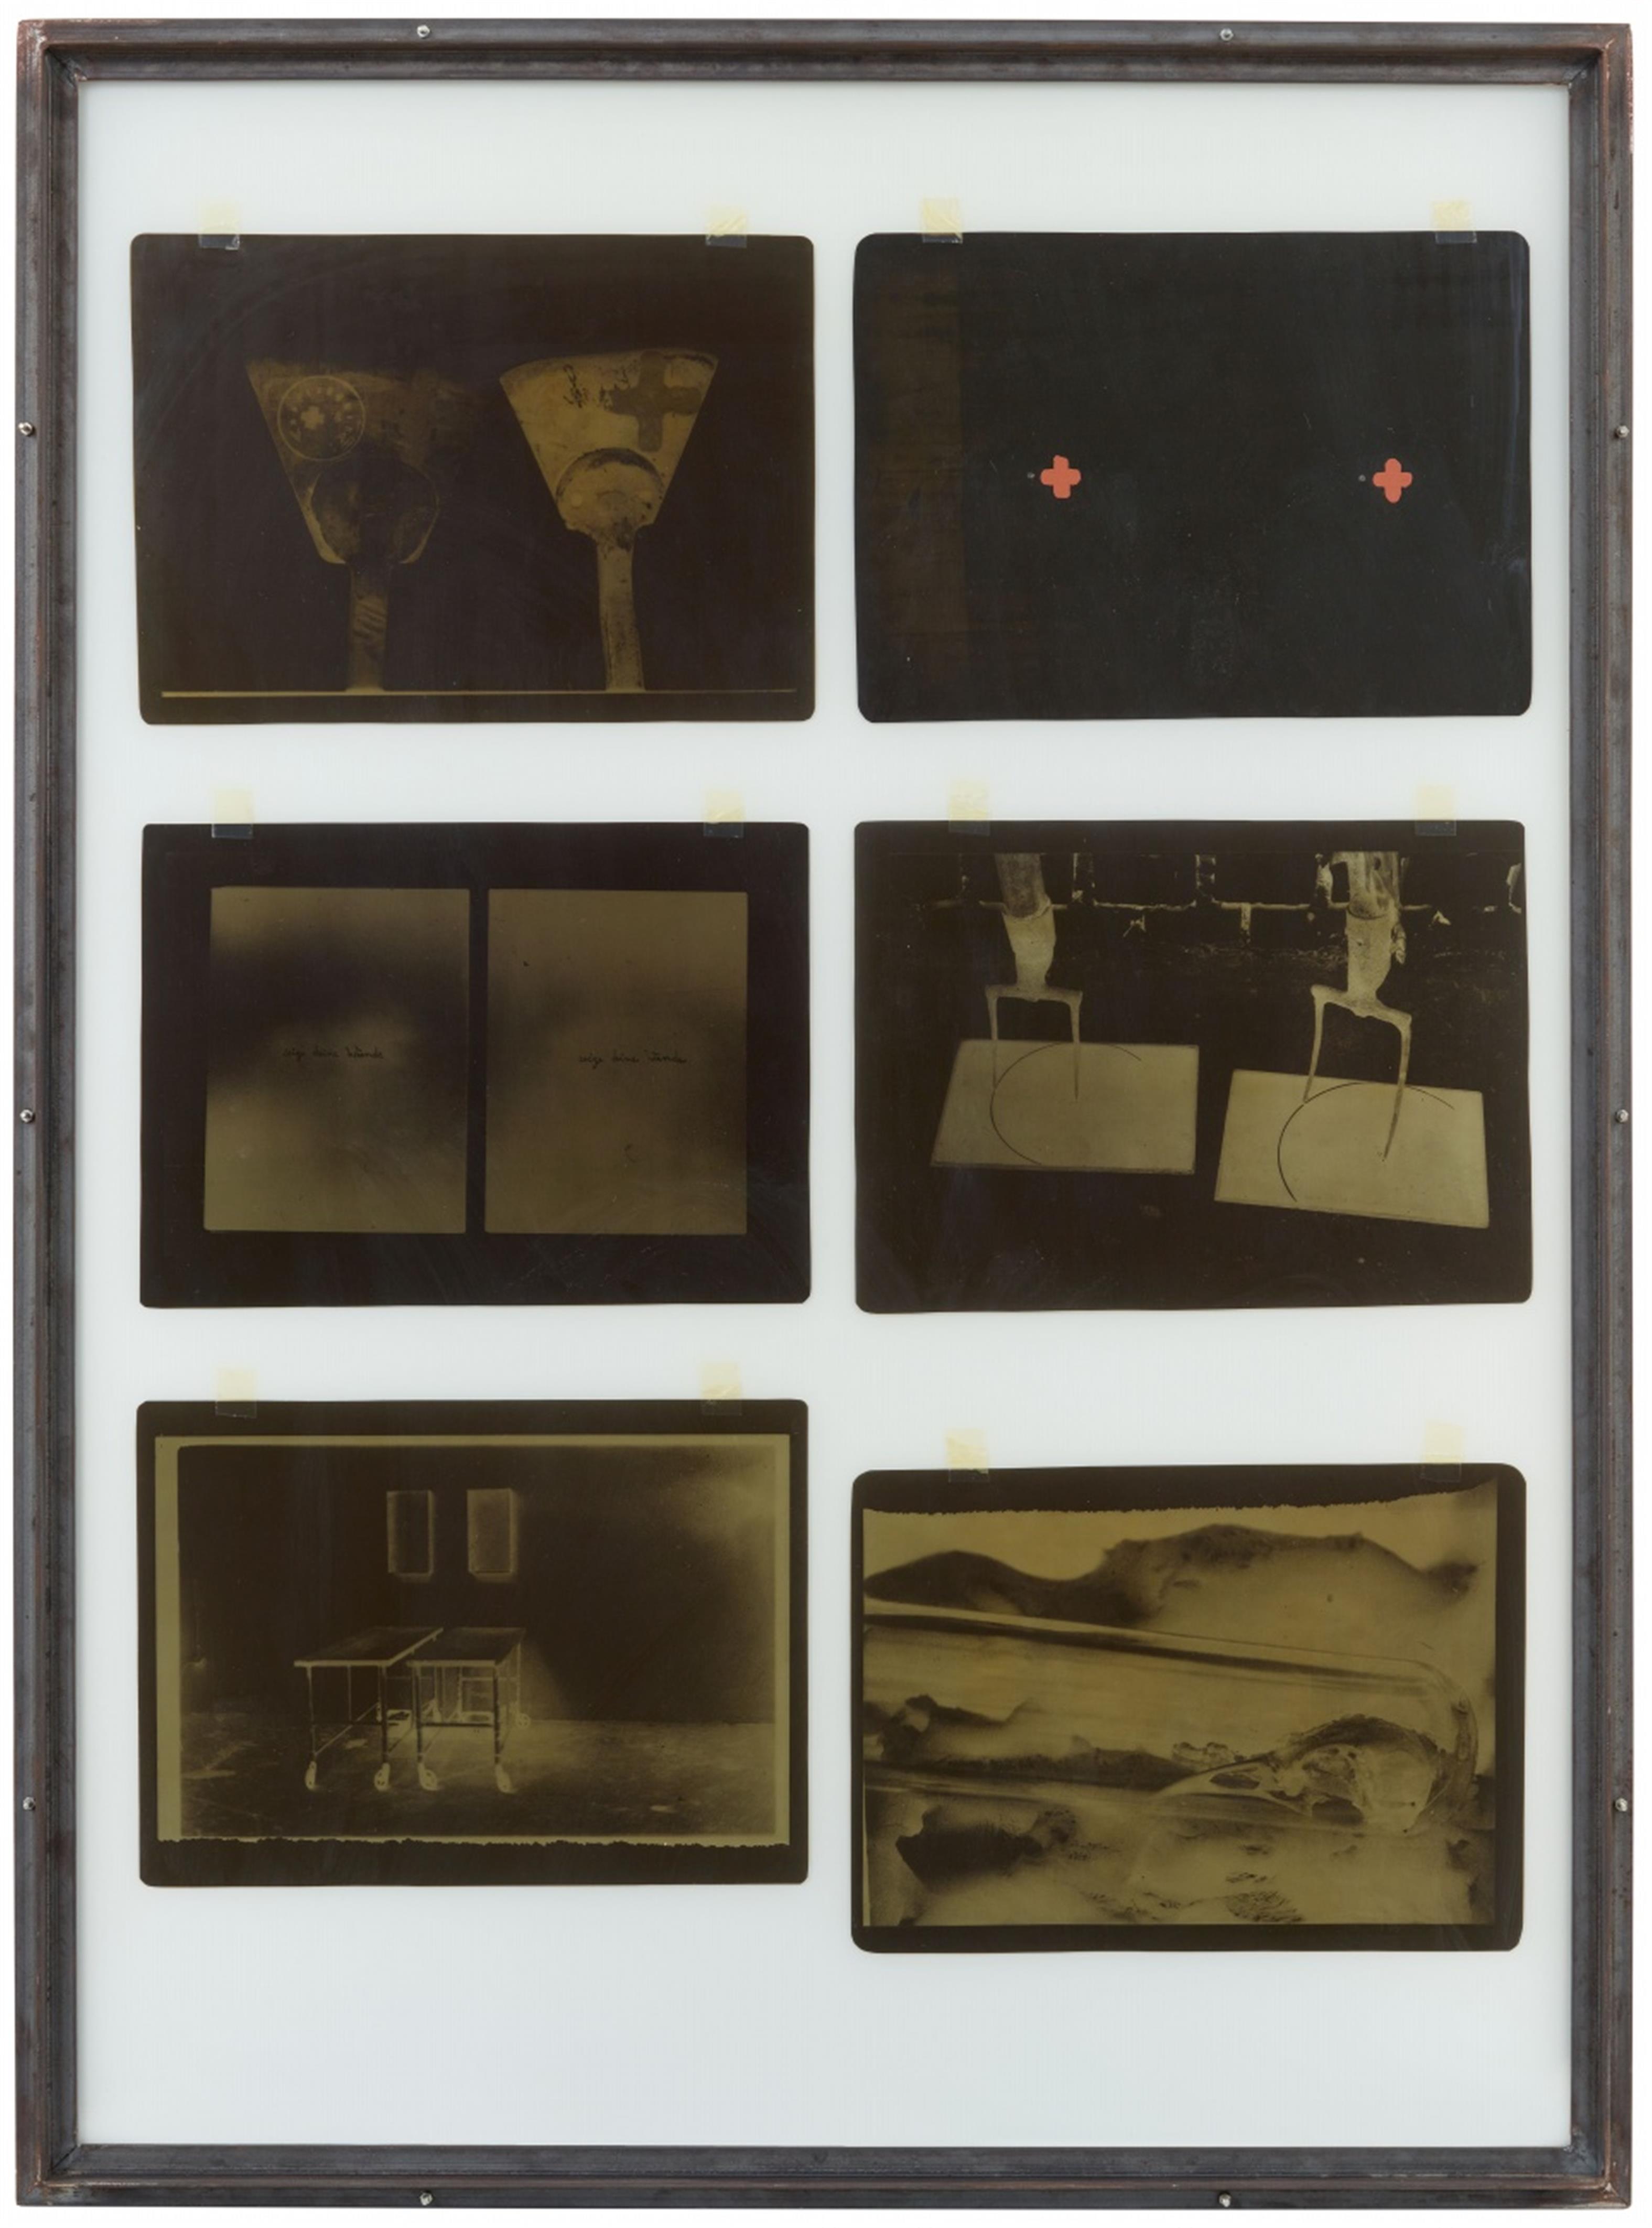 Joseph Beuys - Zeige deine Wunde - image-1